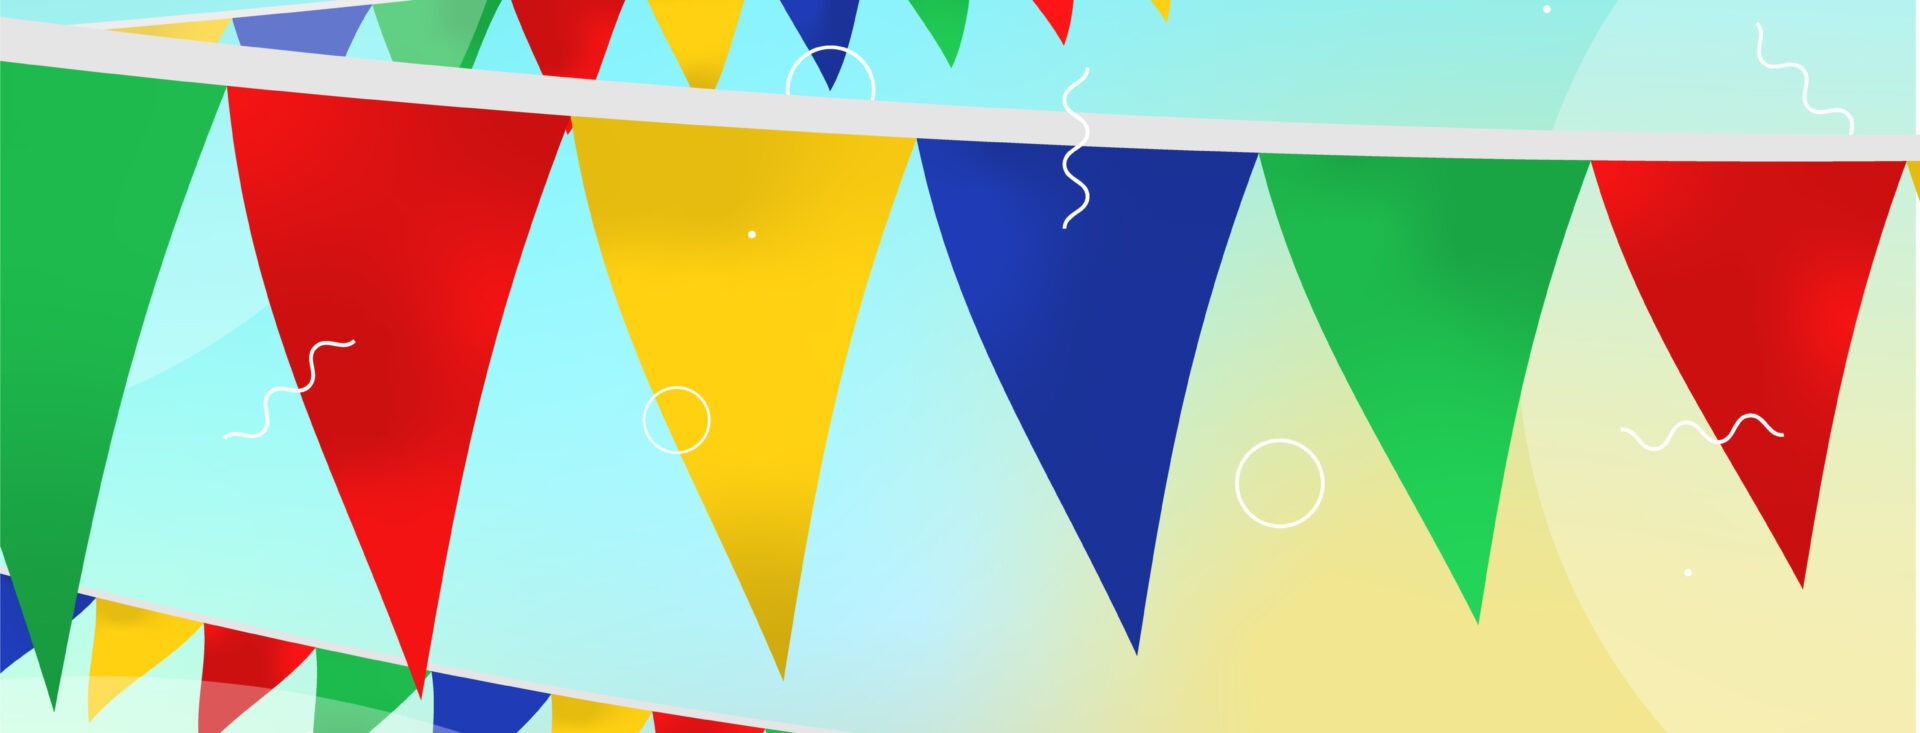 Fond festif avec fanions en forme de triangles, jaunes, verts, bleus et rouges